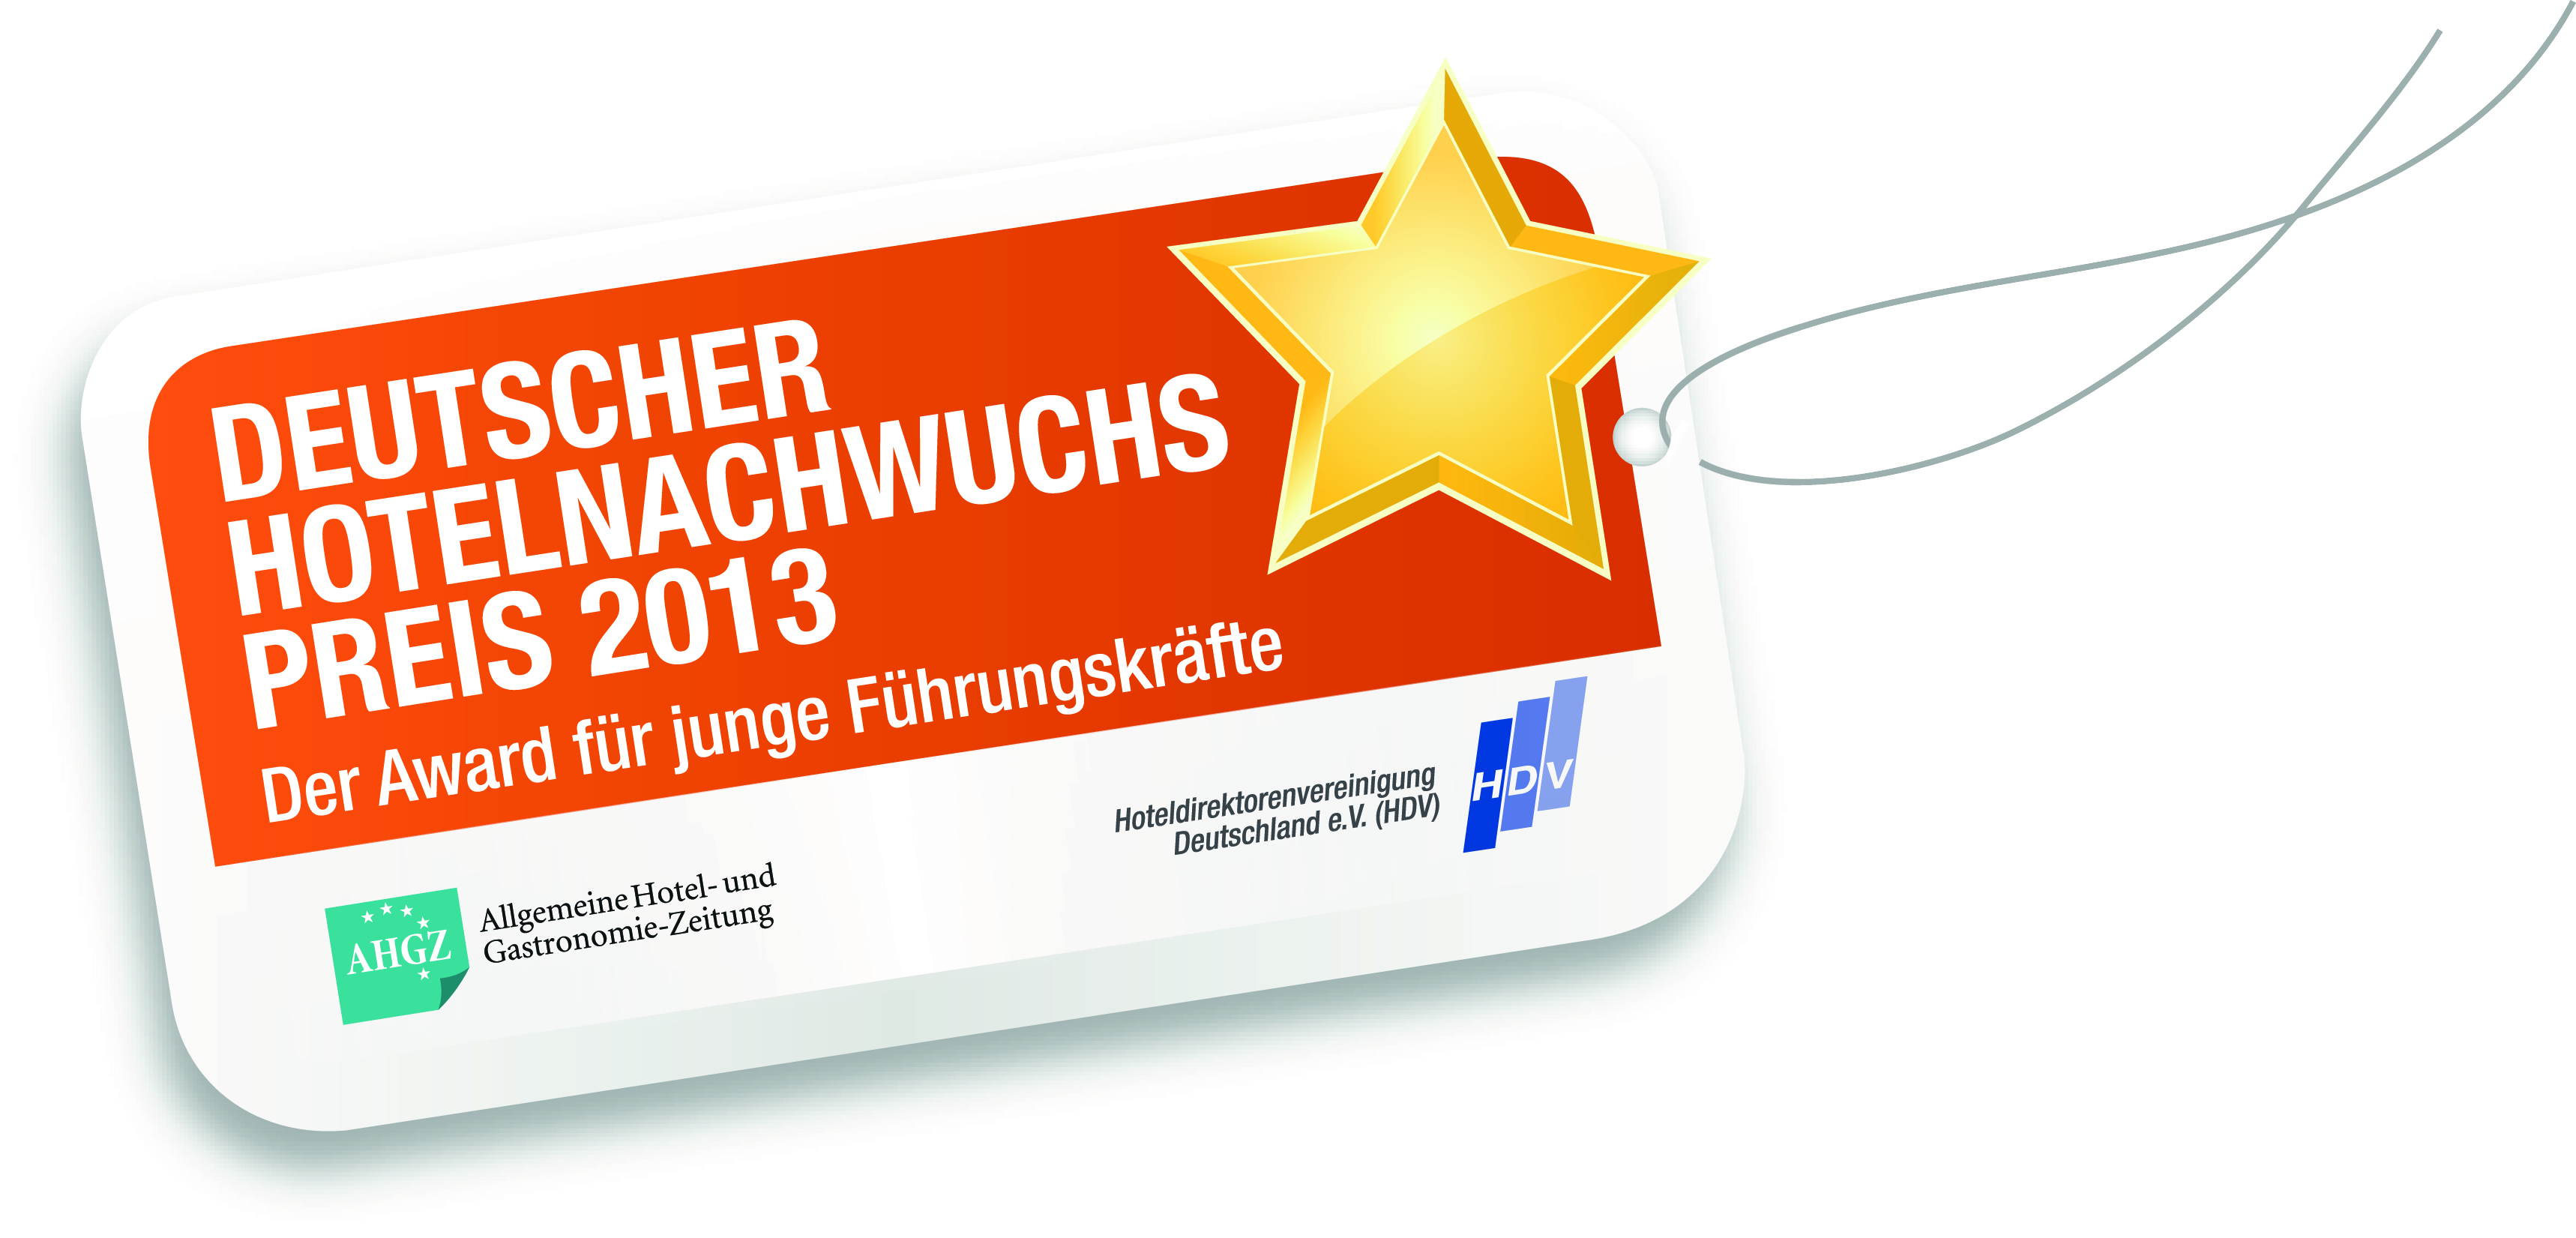 Deutscher Hotelnachwuchs Preis 2013